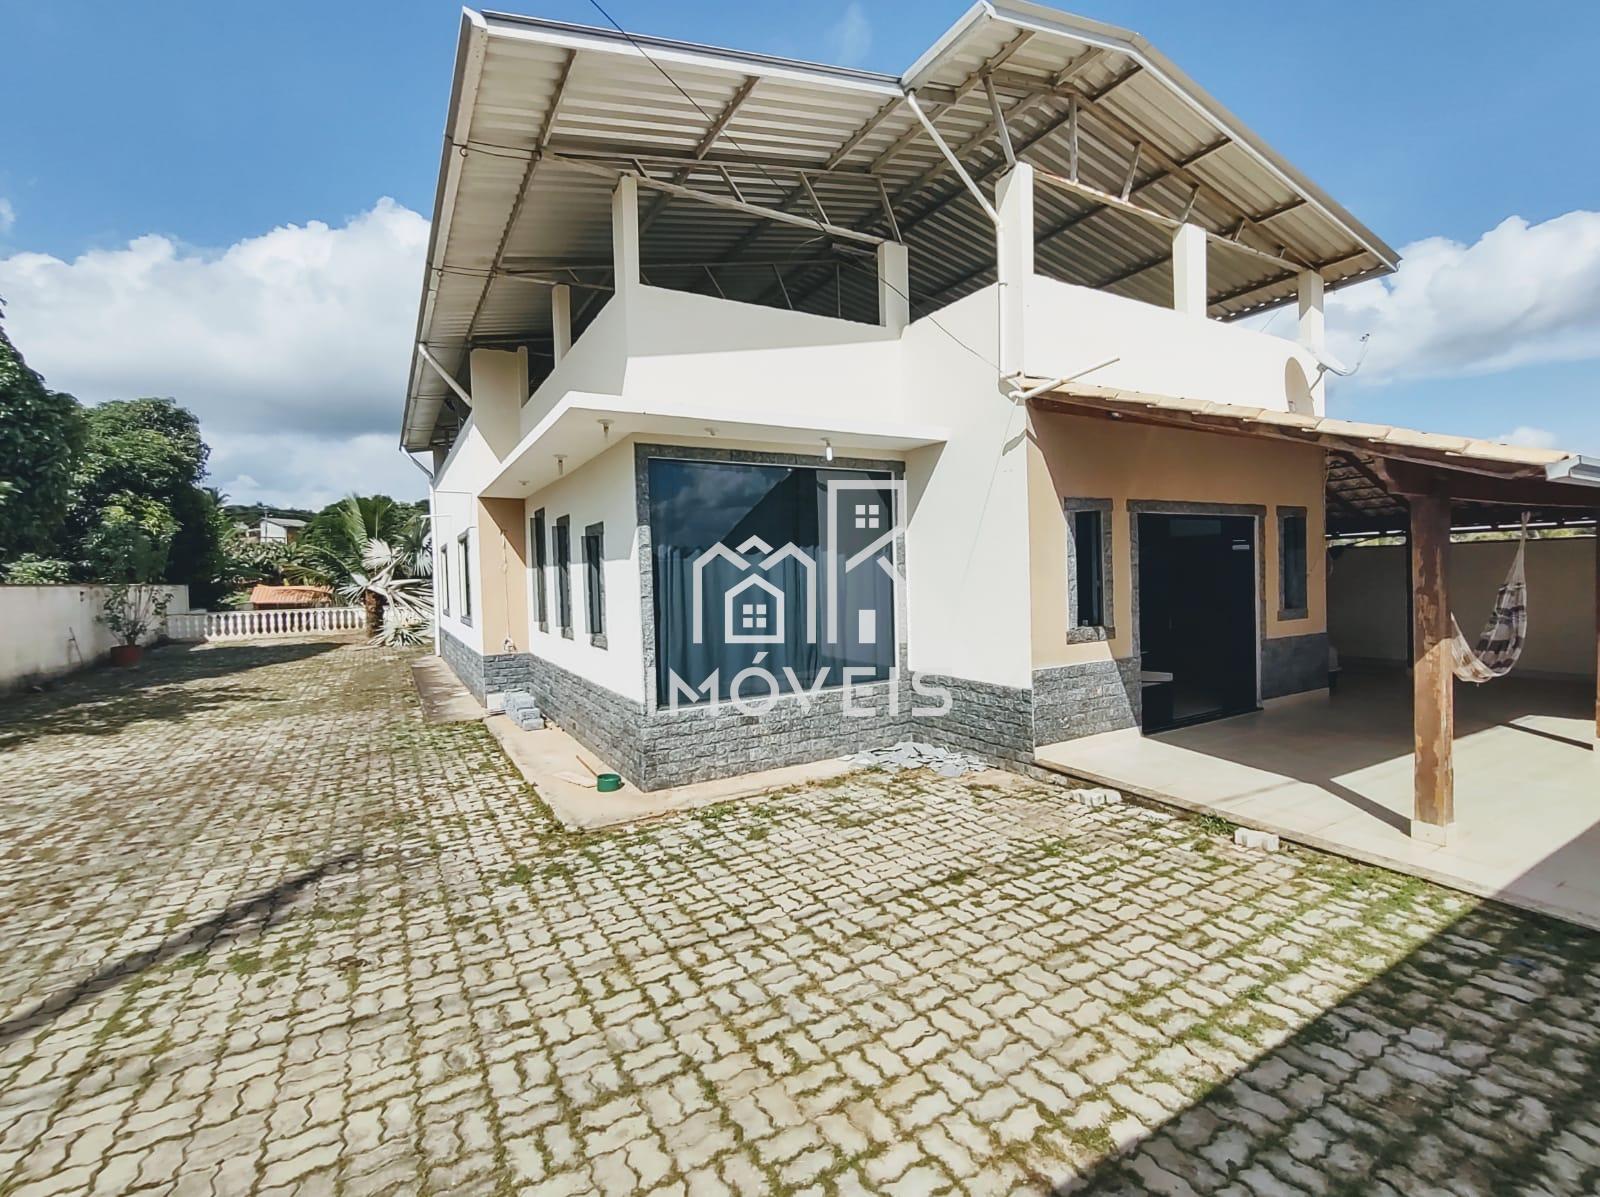 Casa à venda em Goianá com 3 dormitórios sendo 1 suíte no Centro